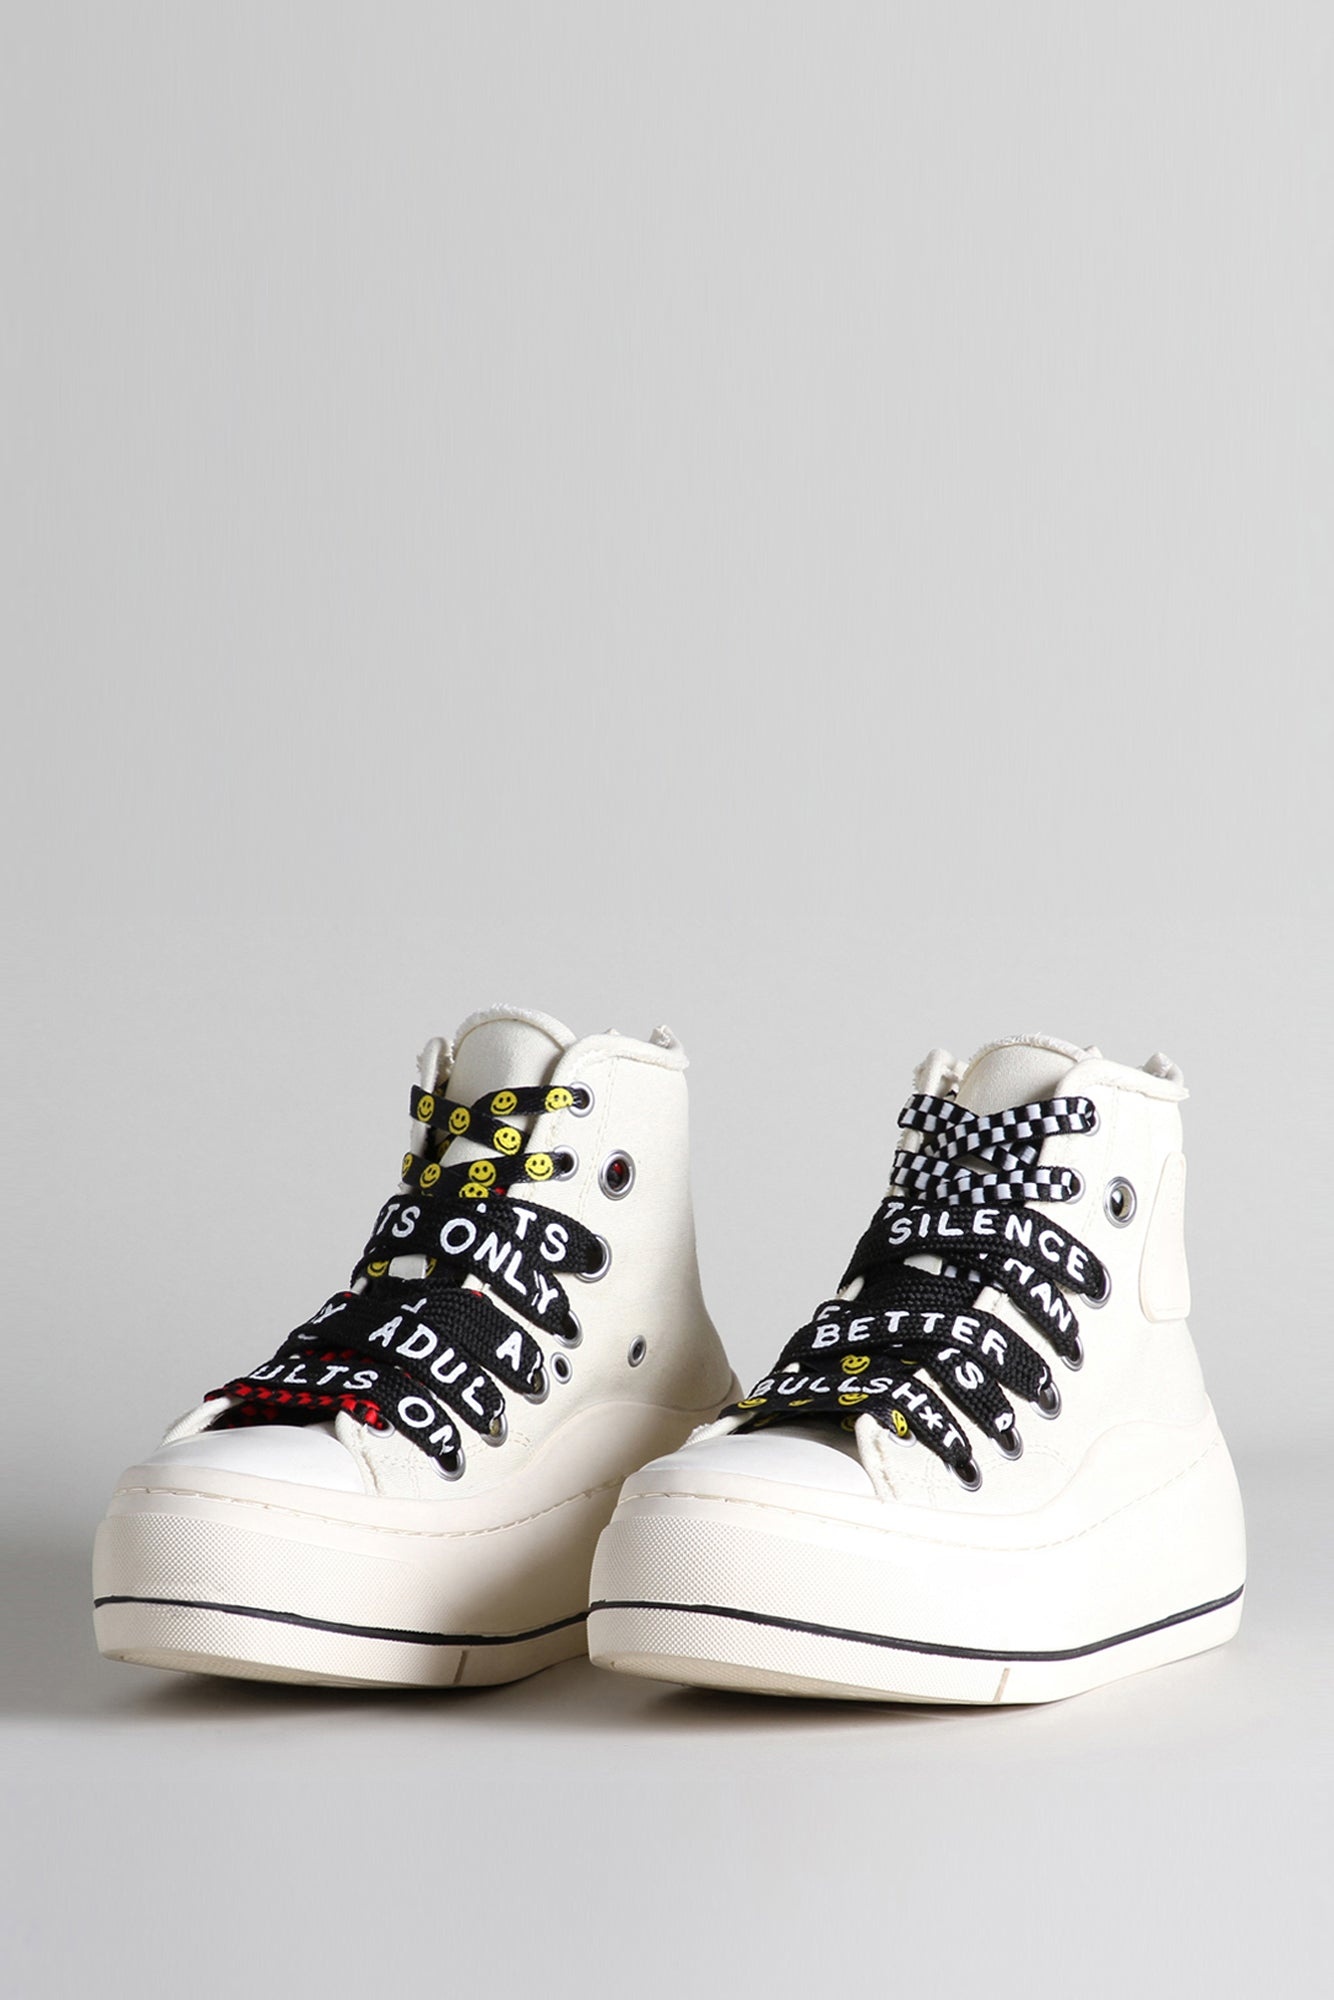 Kurt High Top Sneaker - Ecru | R13 Denim Official Site - 1